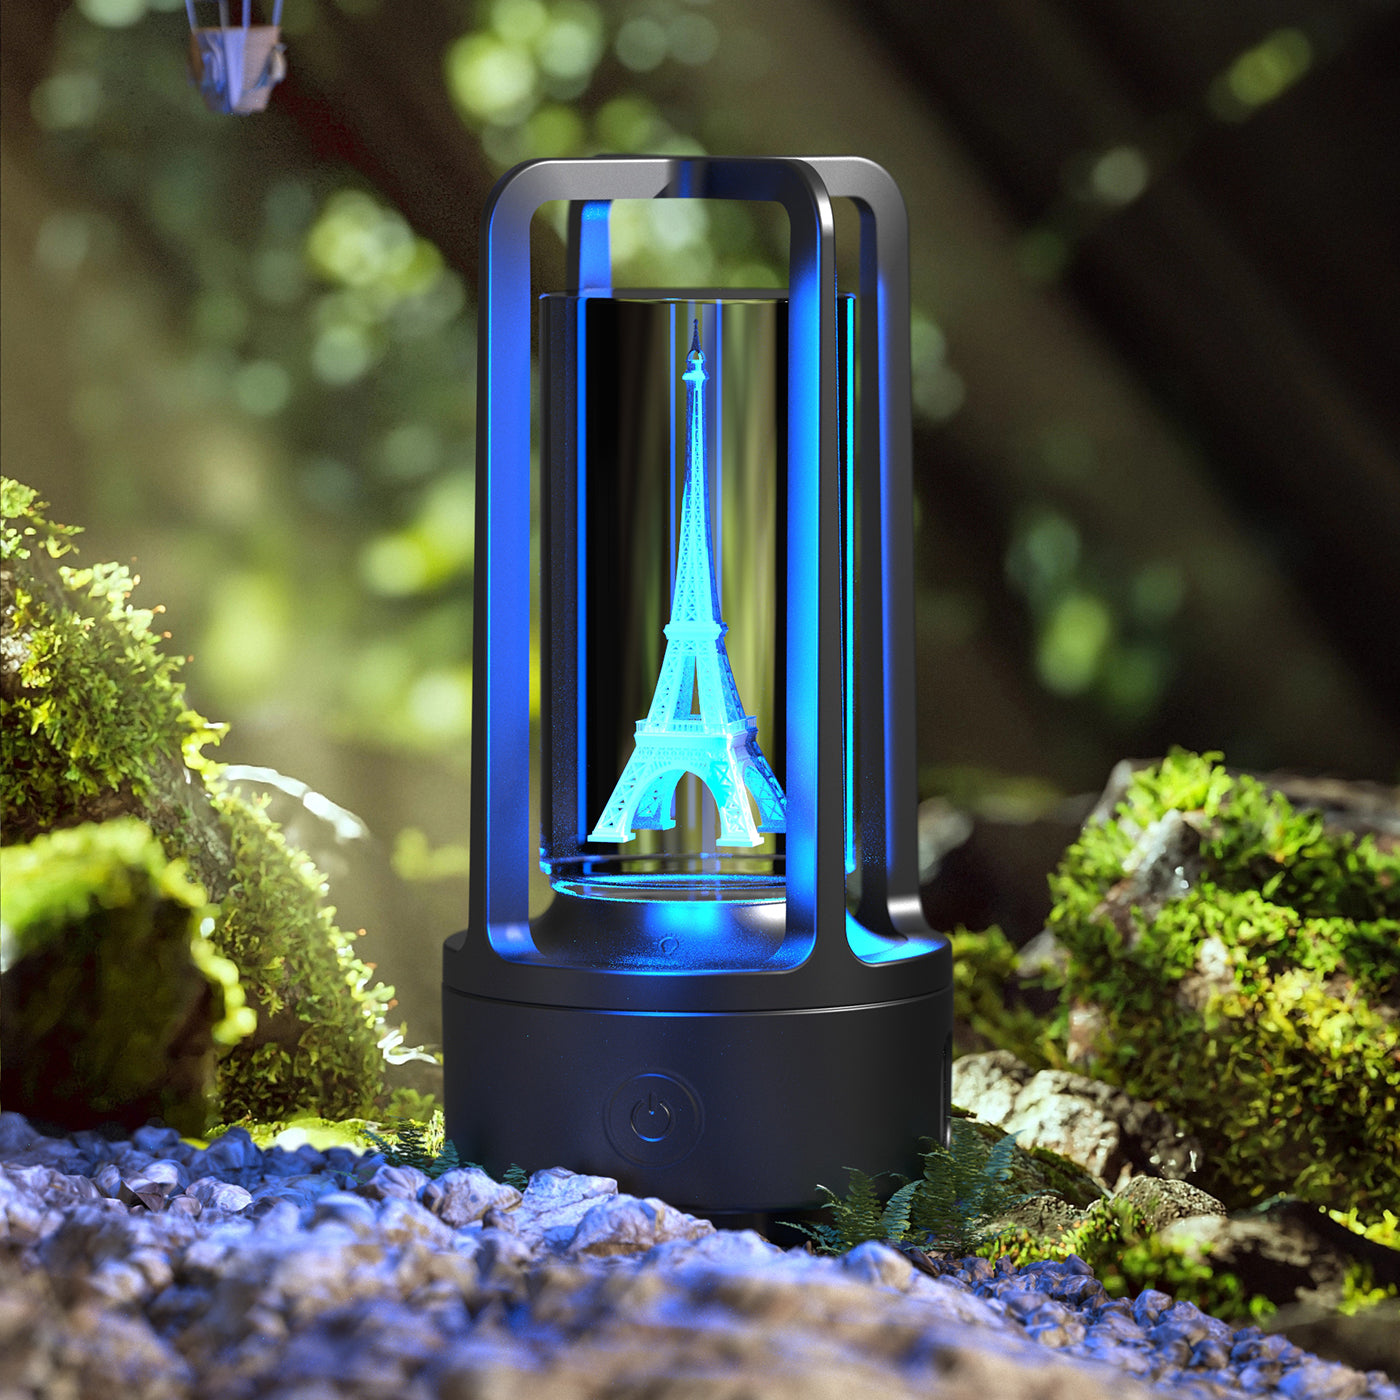 HOOR Lamp Bluetooth Speaker Black Crystal Tower